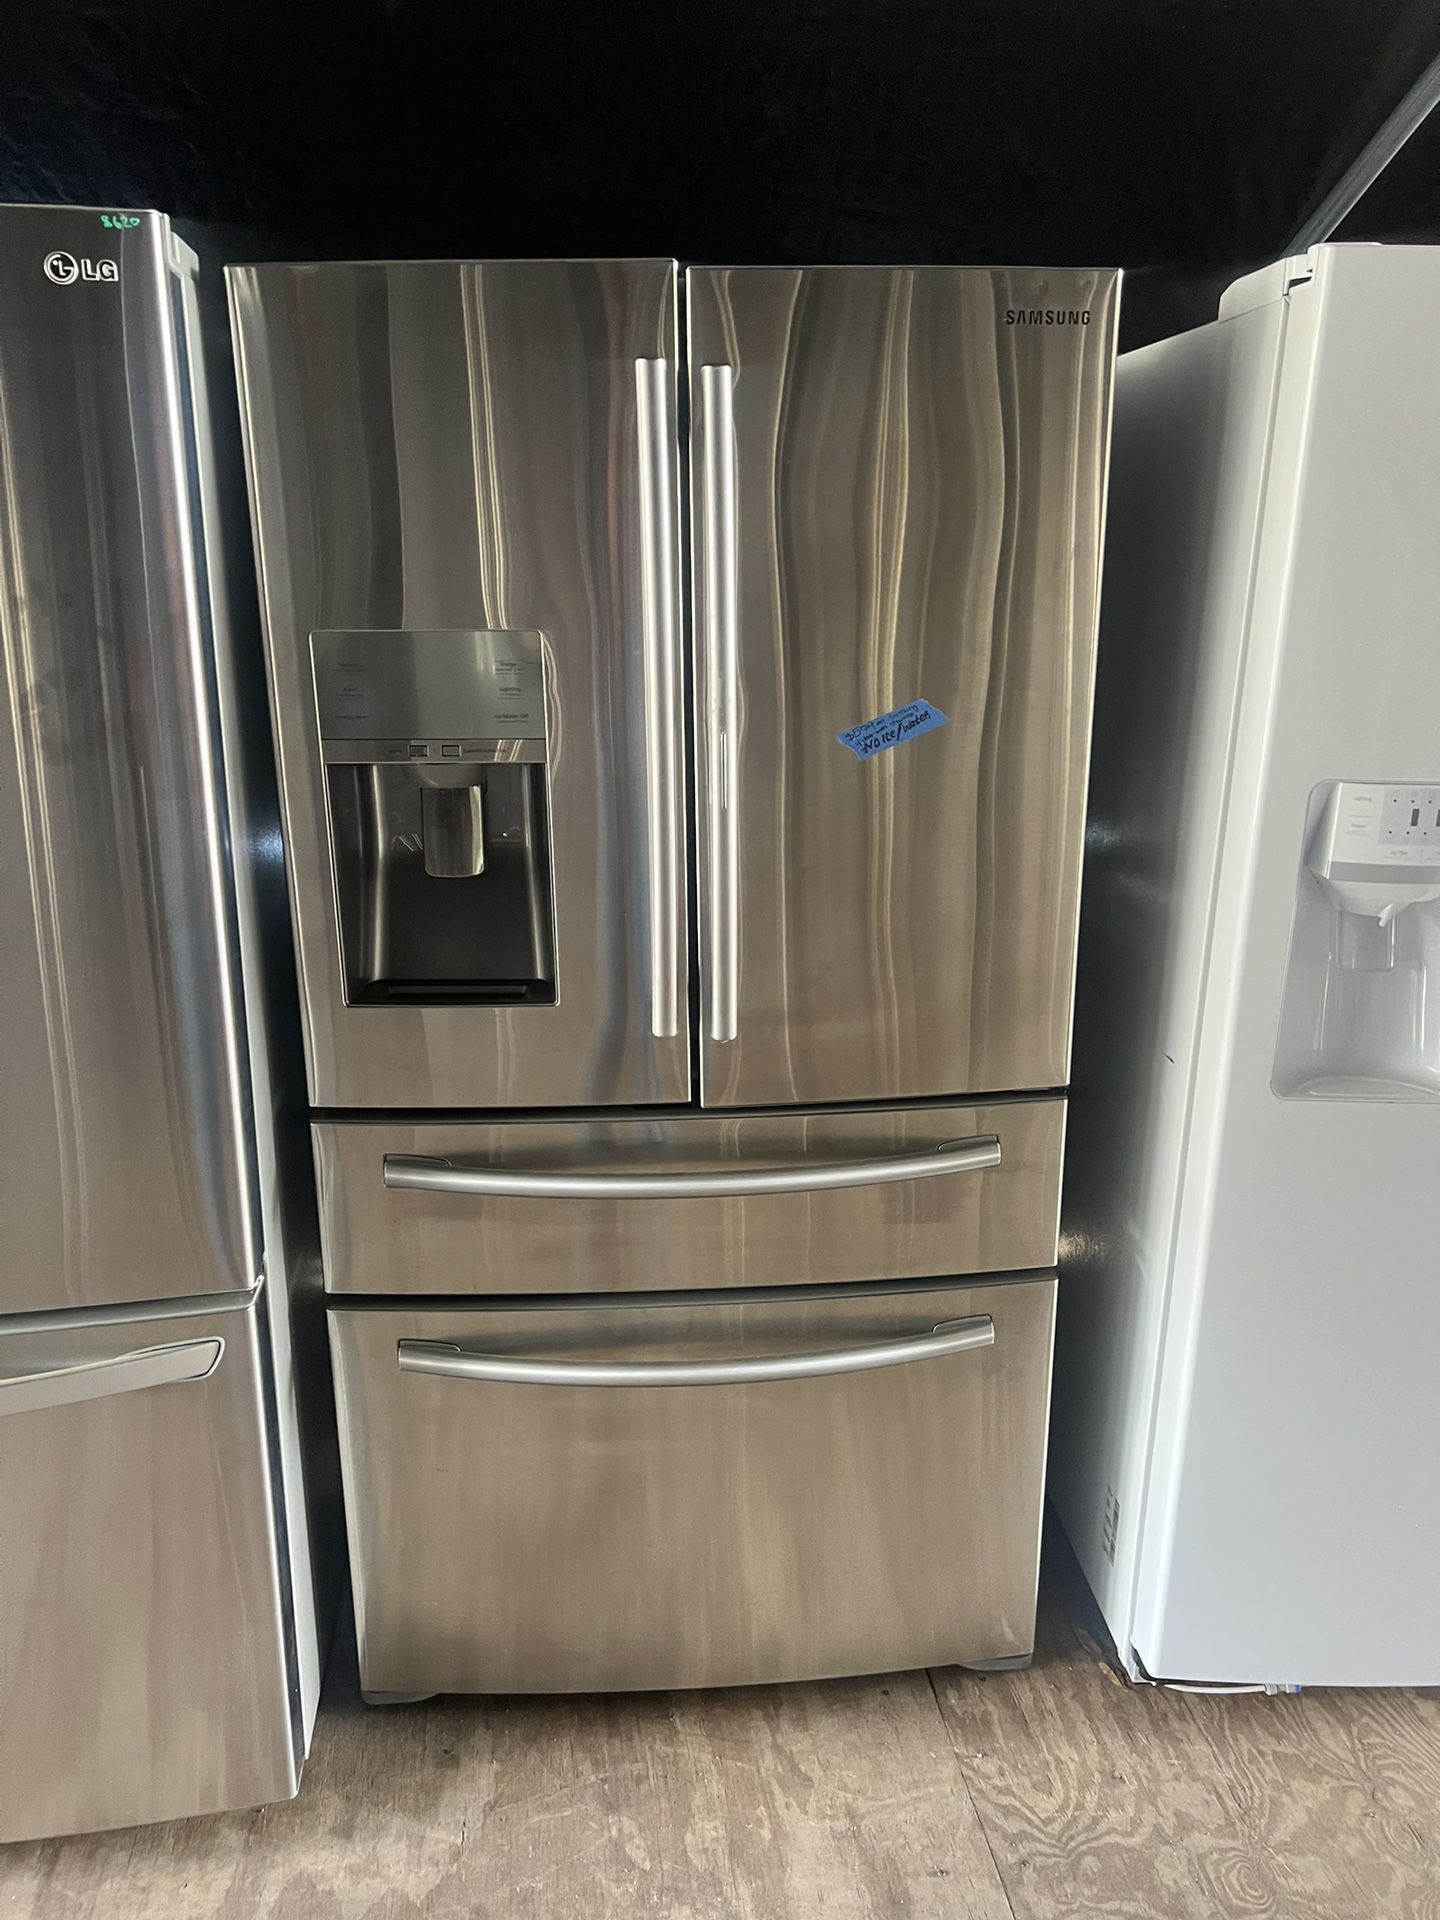 LG counter depth four-door refrigerator French door works great 60 day warranty